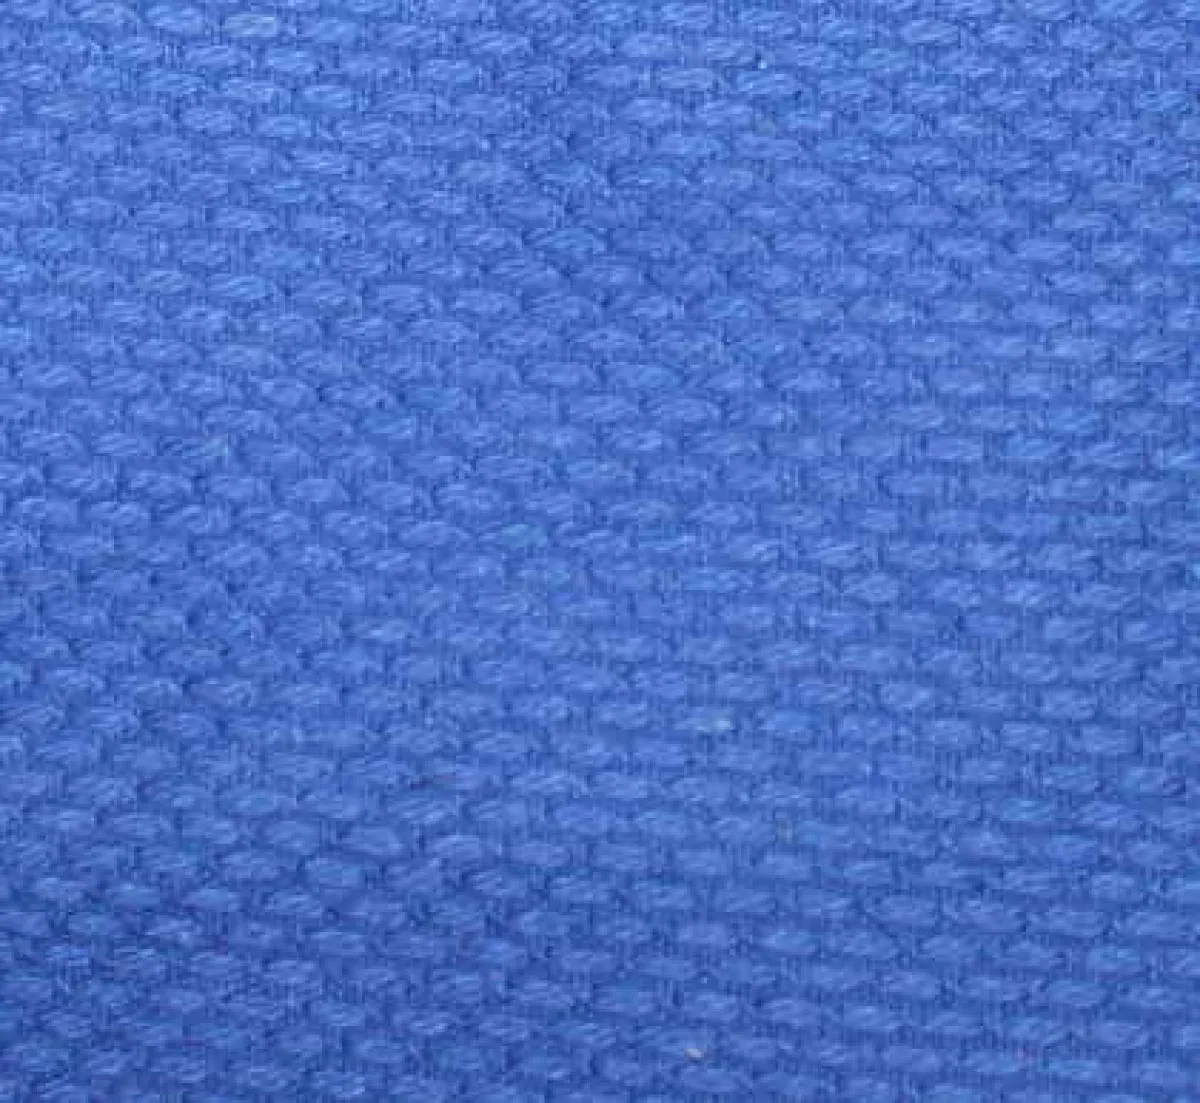 Judo bag blue made of judo suit fabric